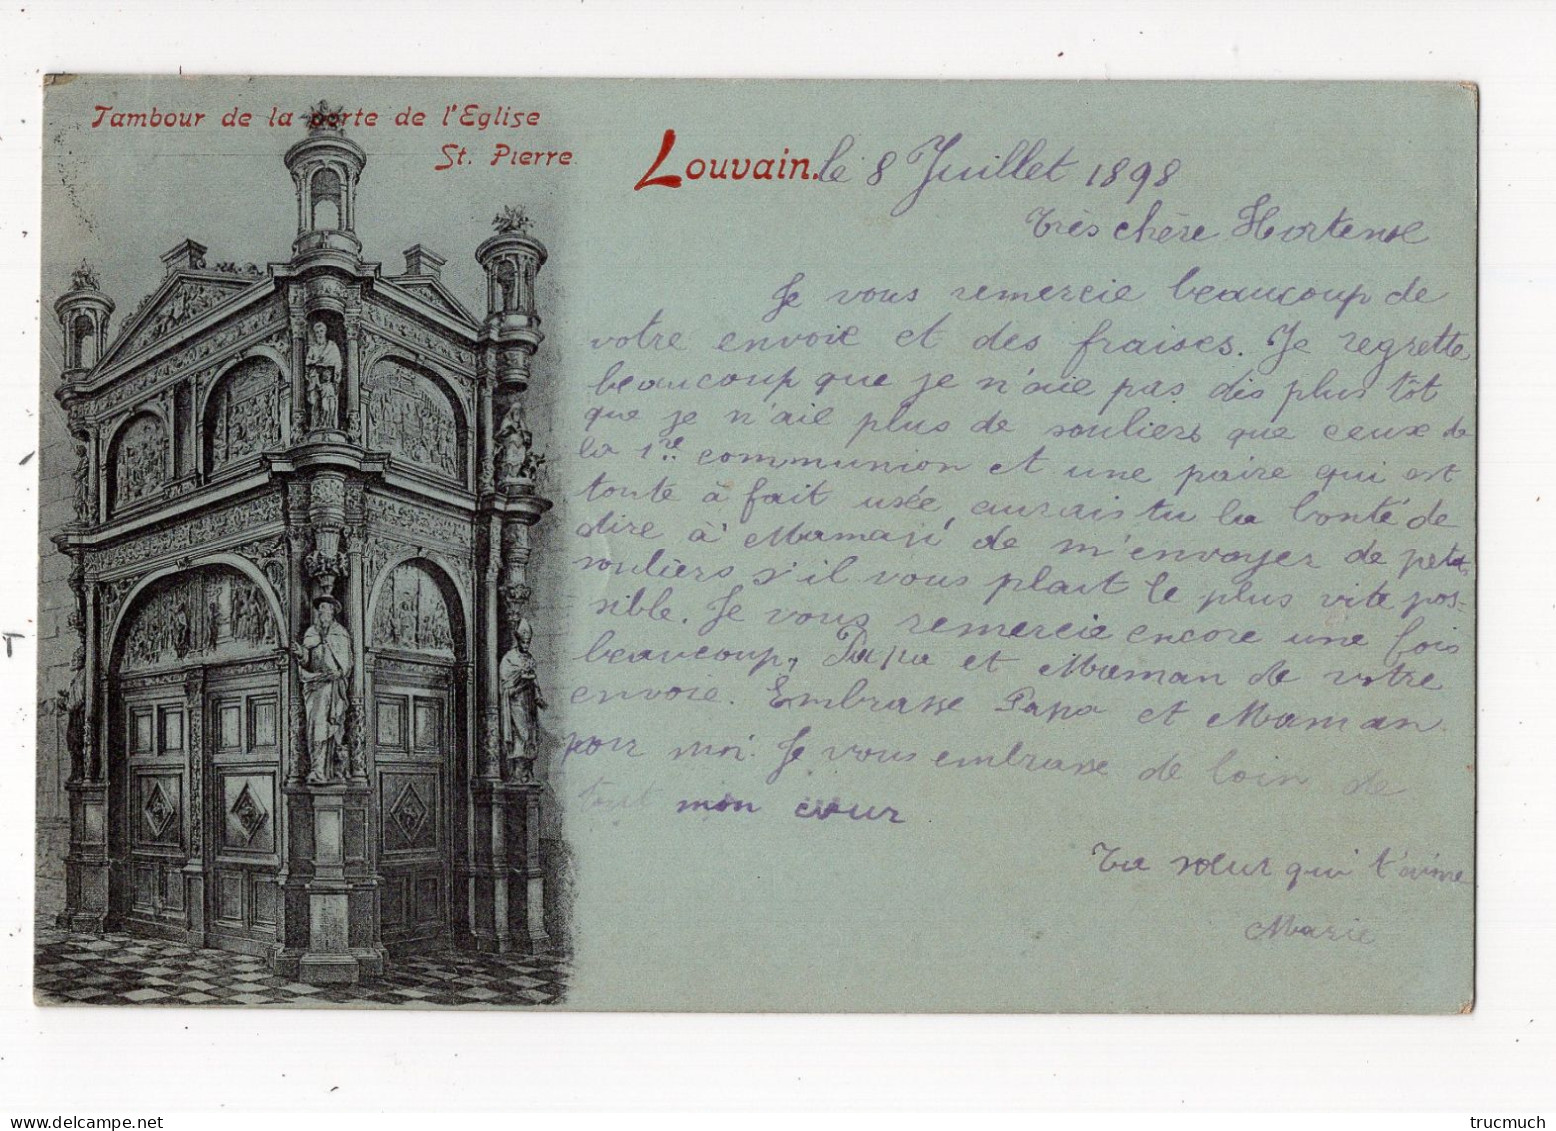 107 - LOUVAIN - Tambour De La Porte De L'Eglise St Pierre *1898* - Leuven